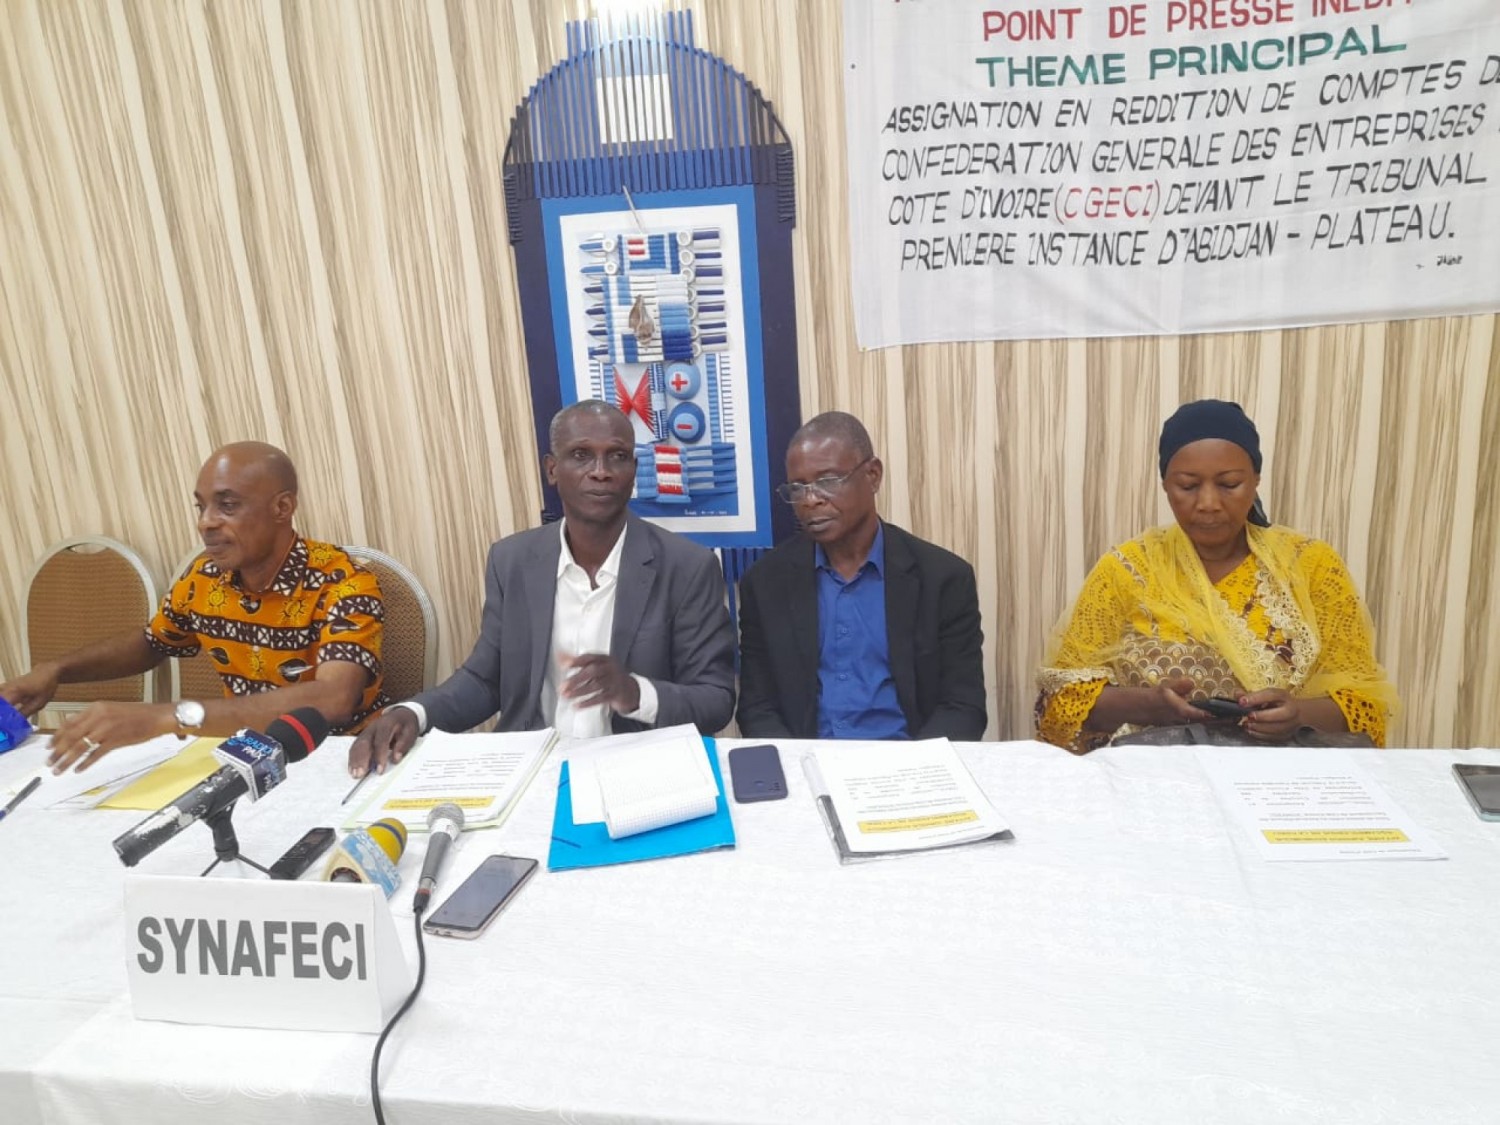 Côte d'Ivoire:  Les fournisseurs d'Etat dénoncent les agissements de la CGECI dans l'affaire qui les oppose devant la justice, alors qu'elle est en délibérée et l'interdiction de l'accès du siège du p